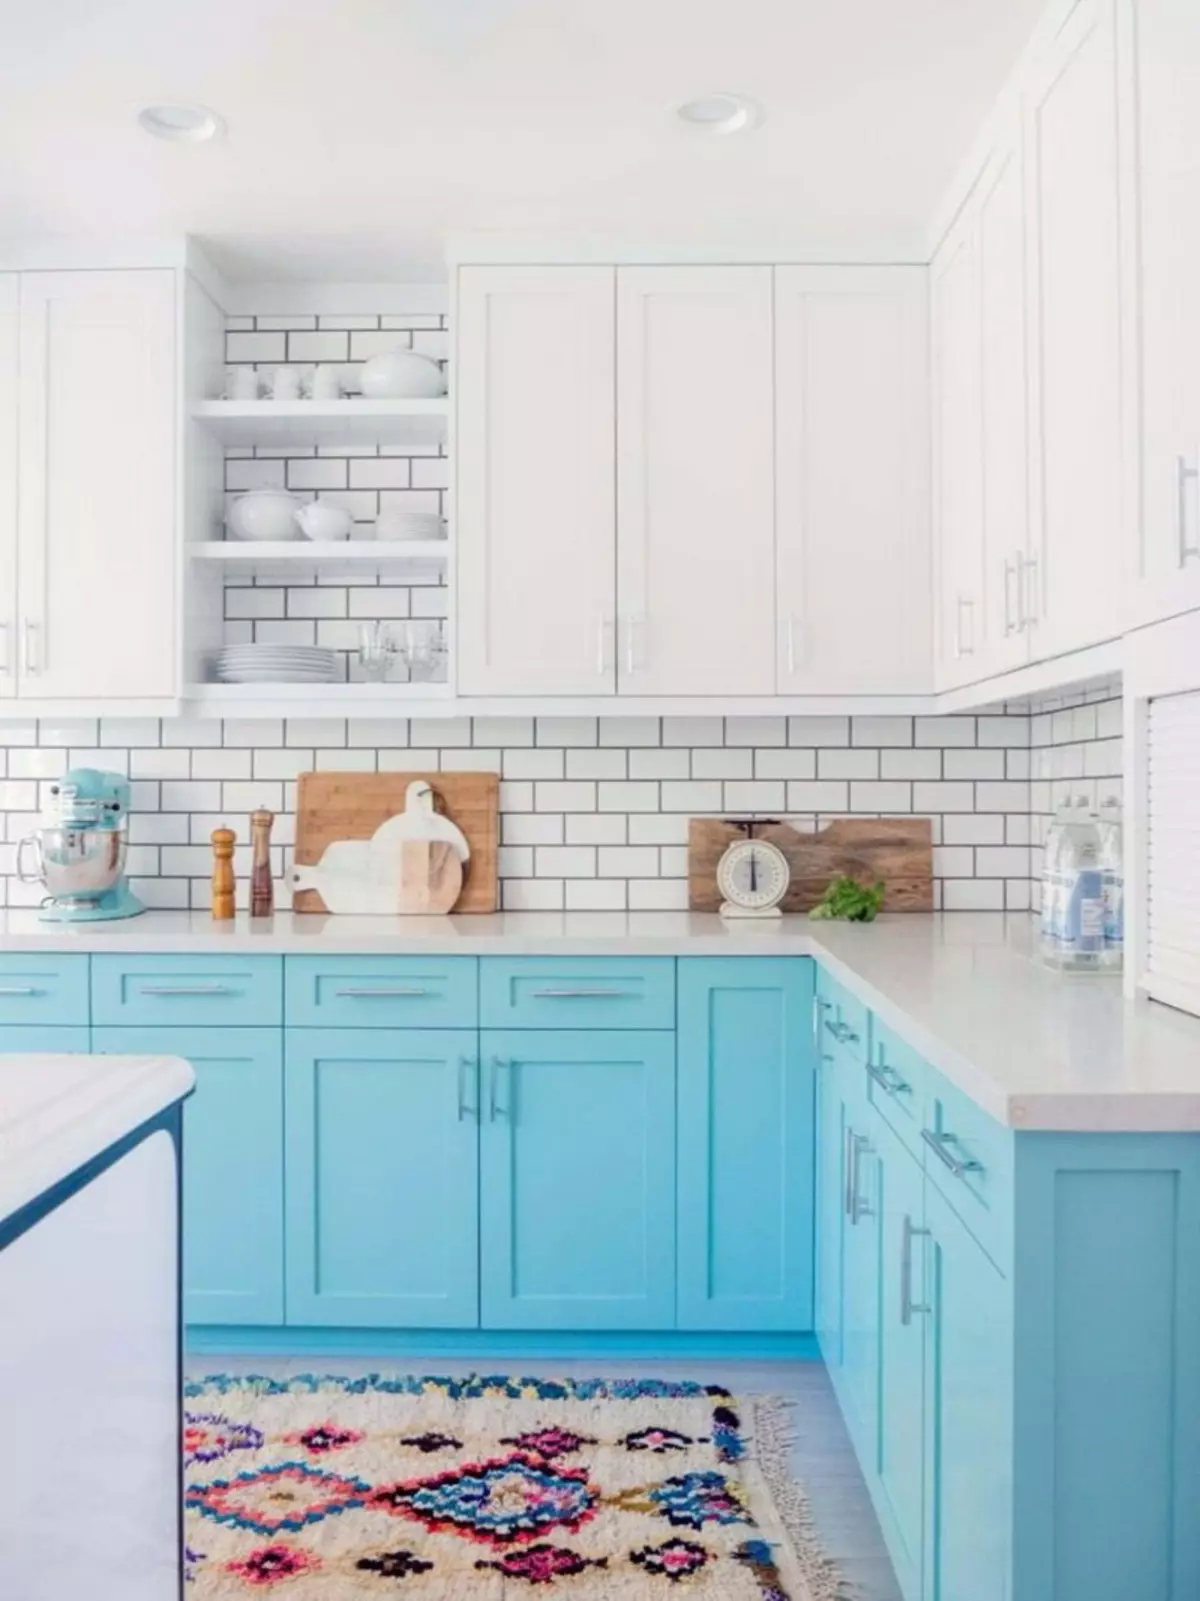 藍廚房（82張照片）：在藍色廚房套裝內部合併哪種顏色？淺藍色和深藍色色調的廚房設計 9555_7